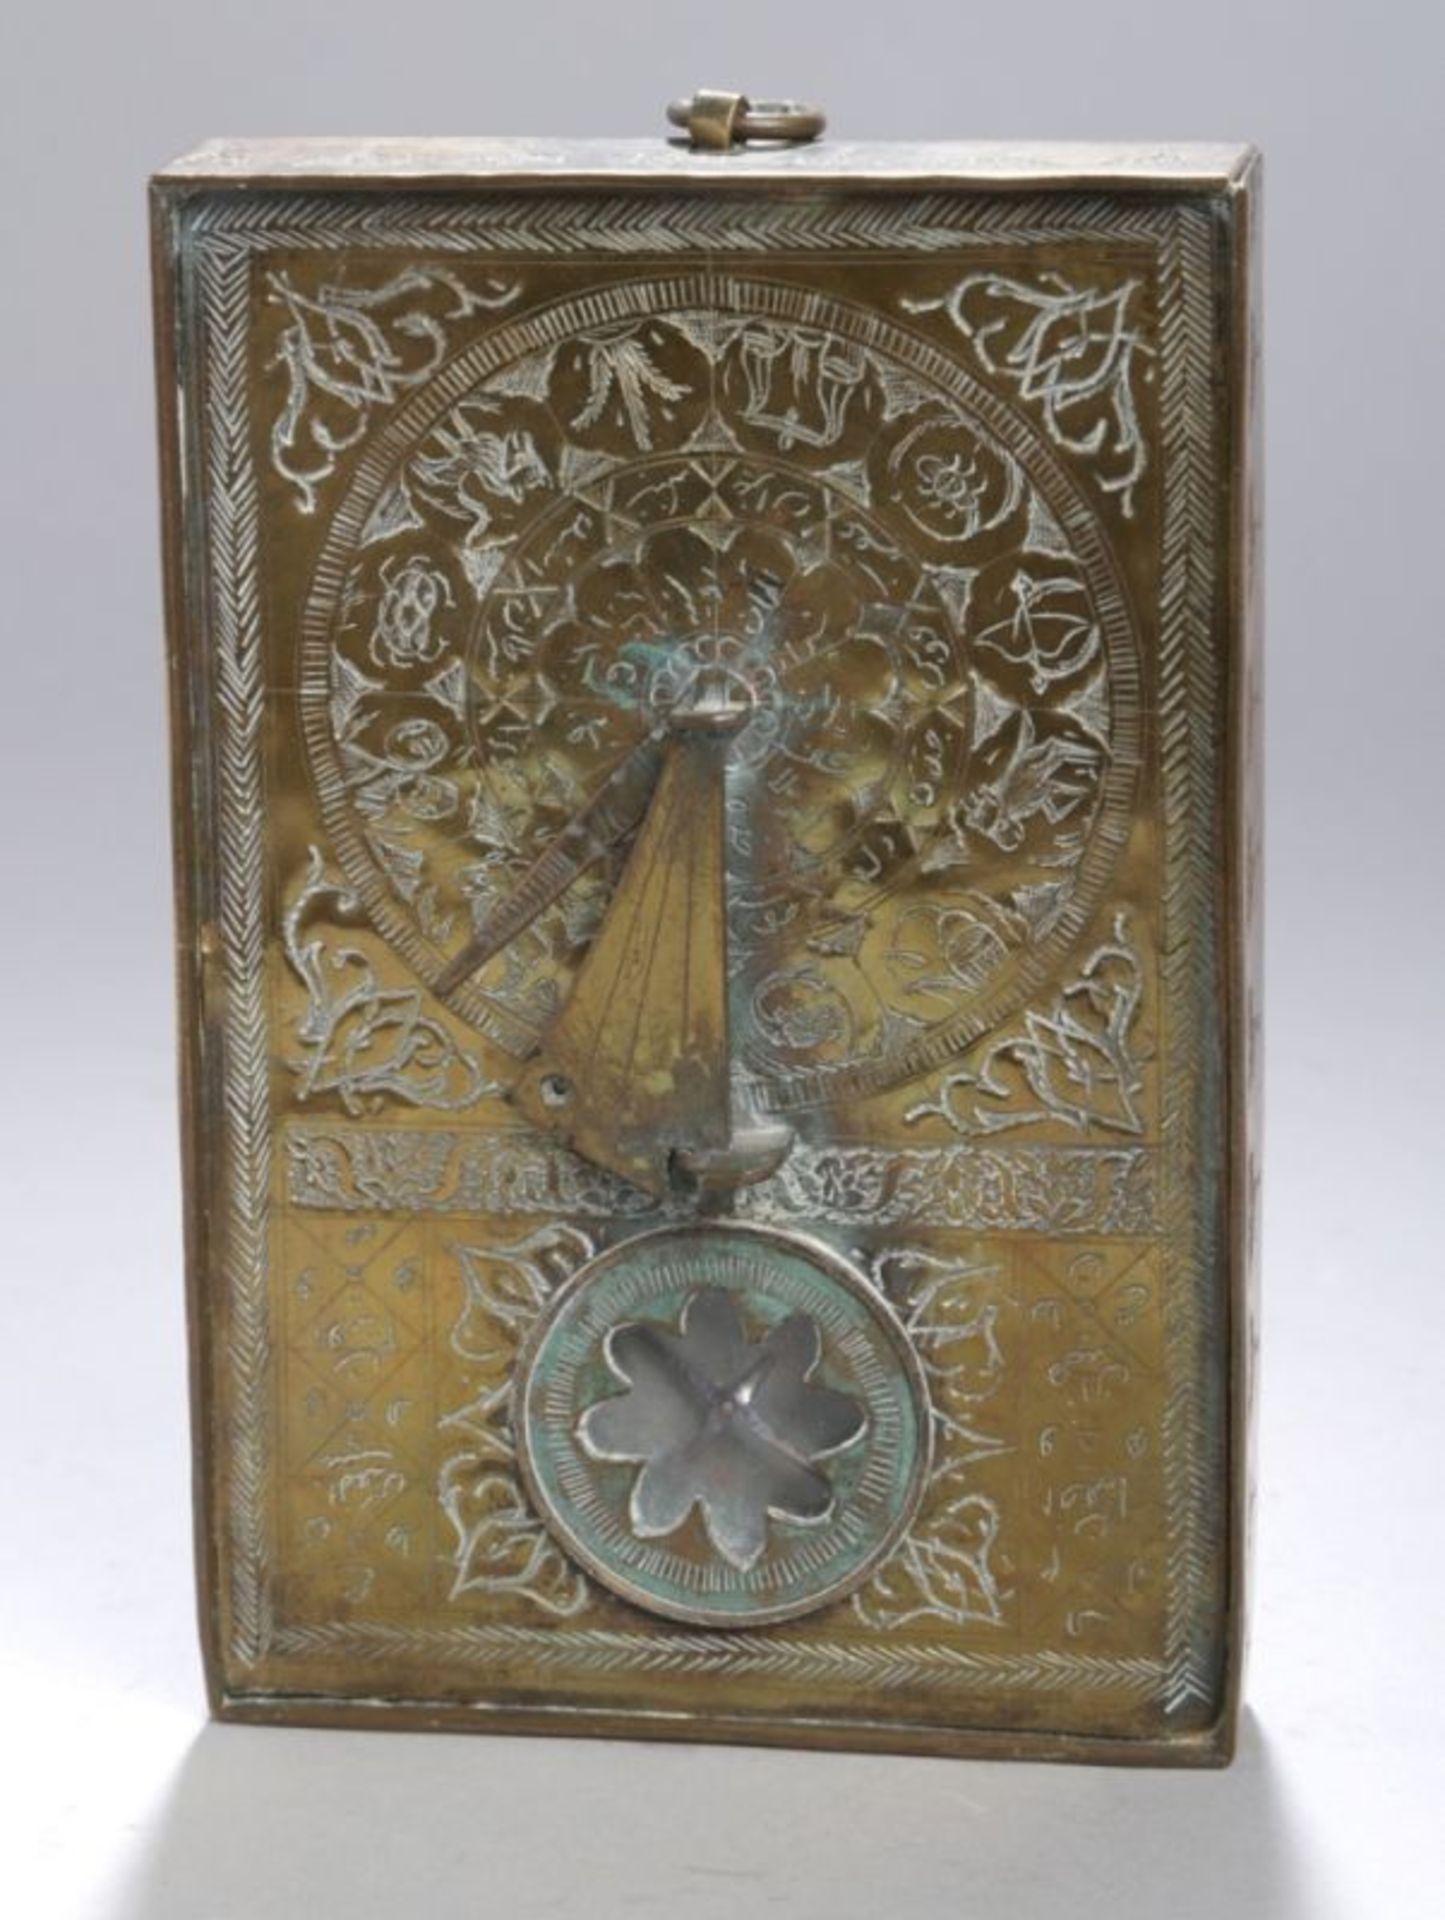 Qibla-Indikator - horizontale Sonnenuhr, wohl Persien, 18. Jh., mit Kompass der in die vomKoran